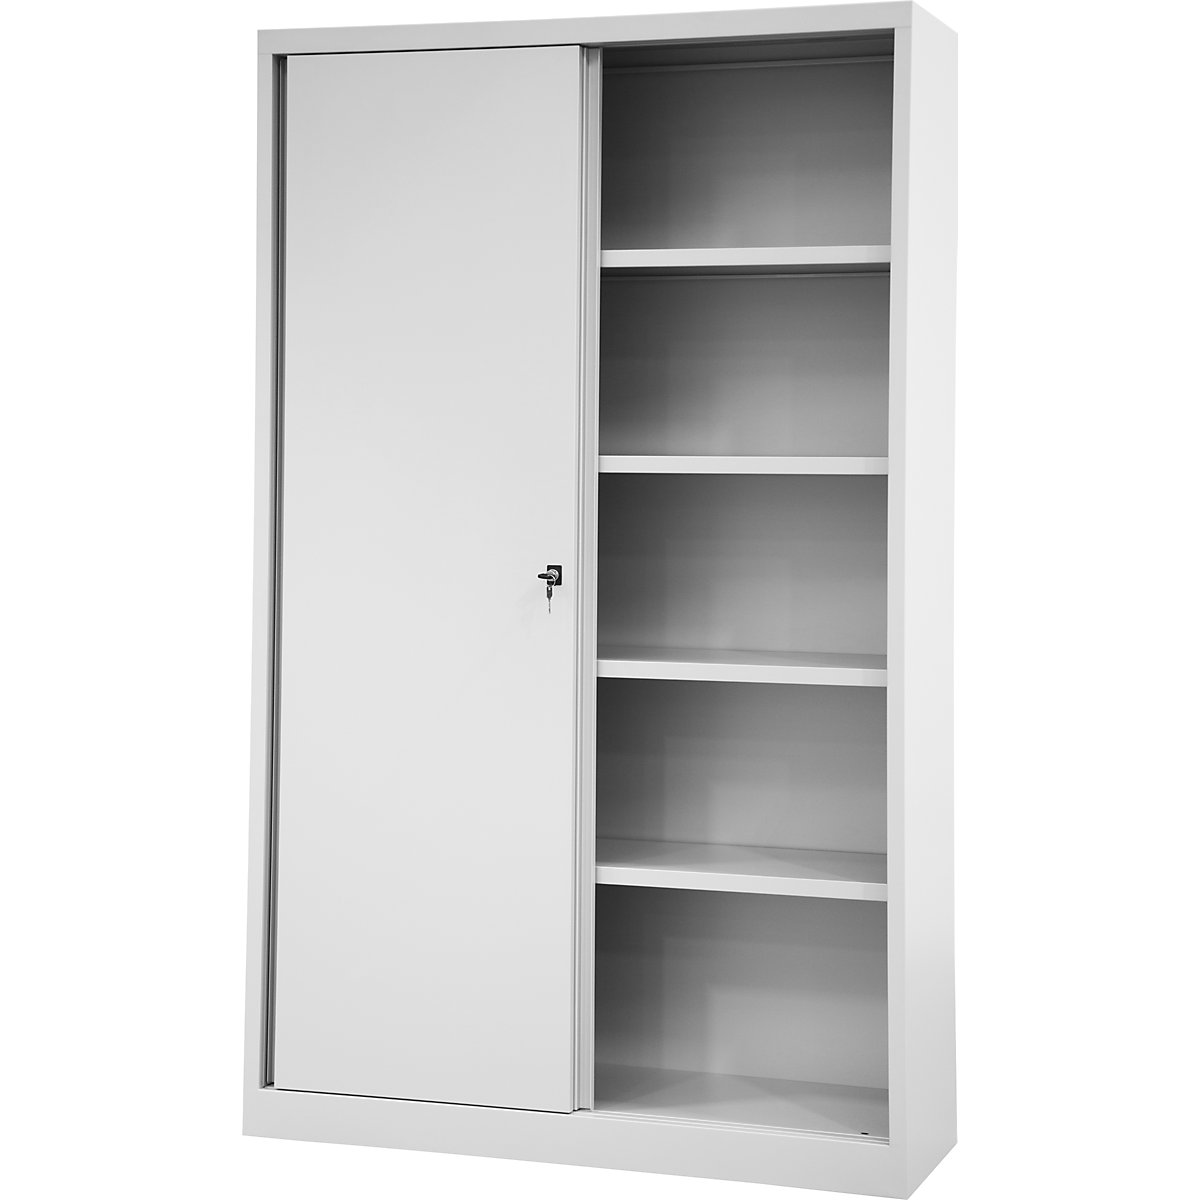 ECO sliding door cupboard – BISLEY, 4 shelves, 5 file heights, light grey-9